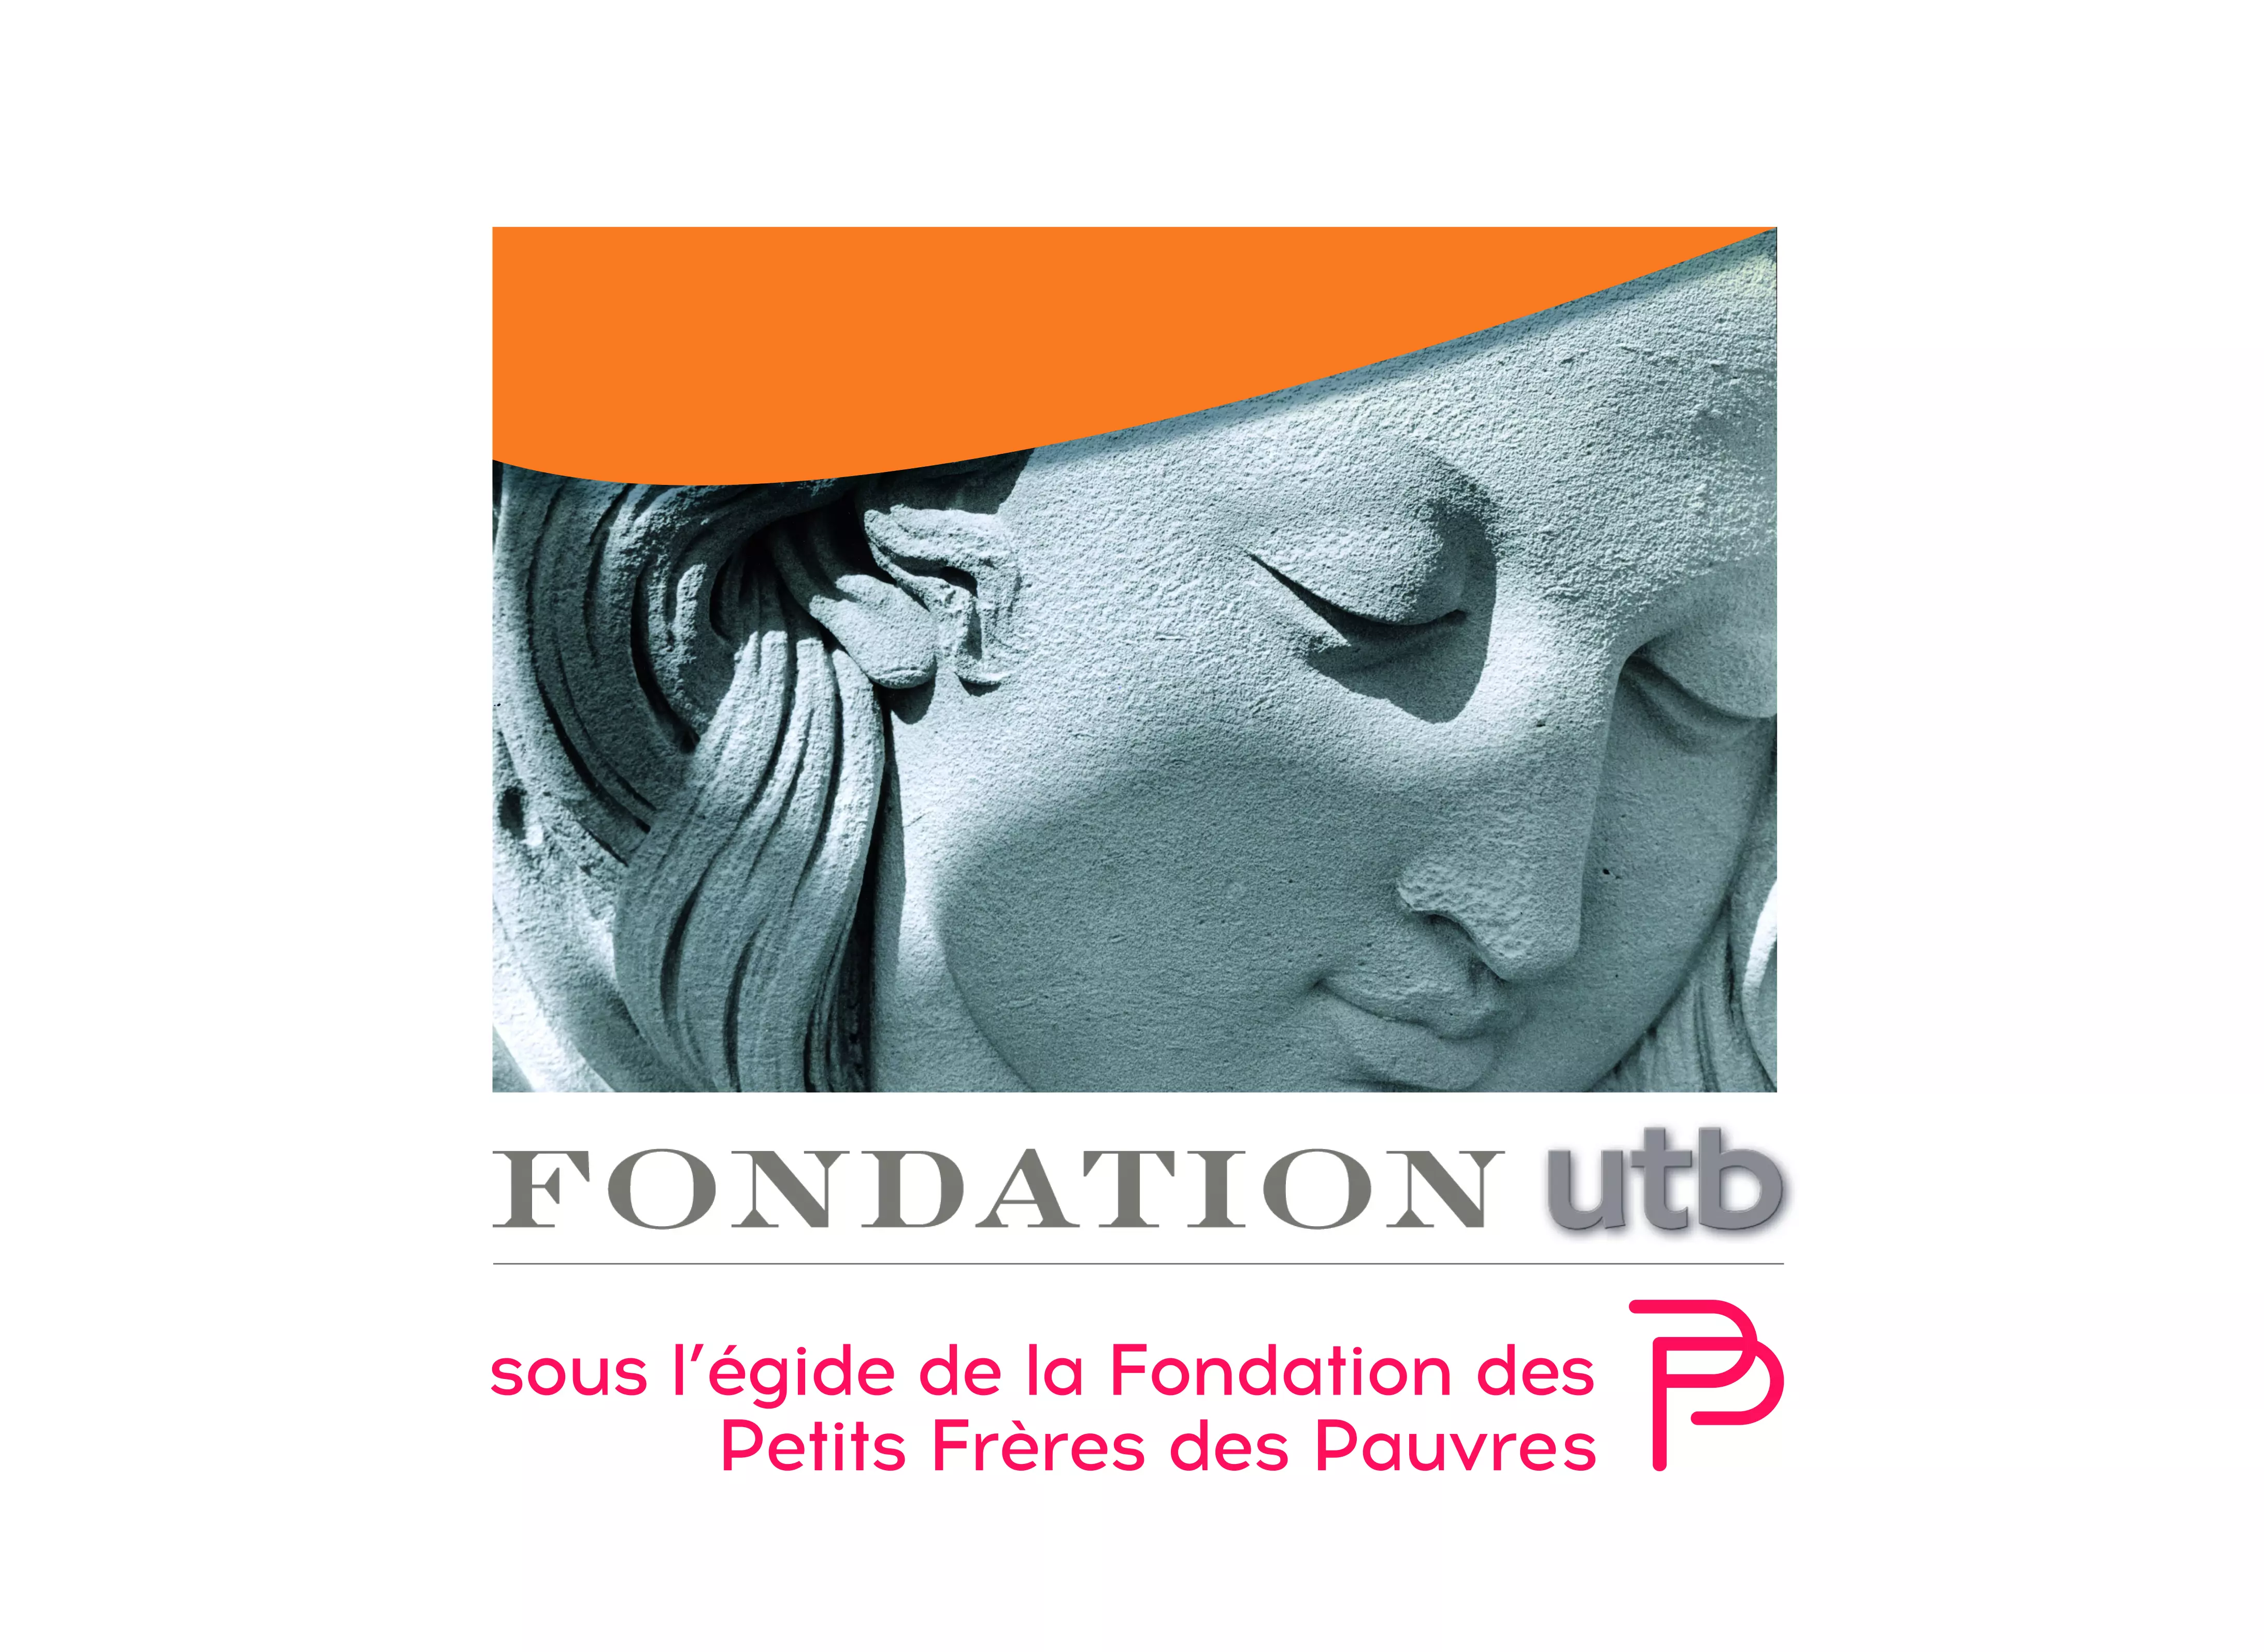 La Fondation utb